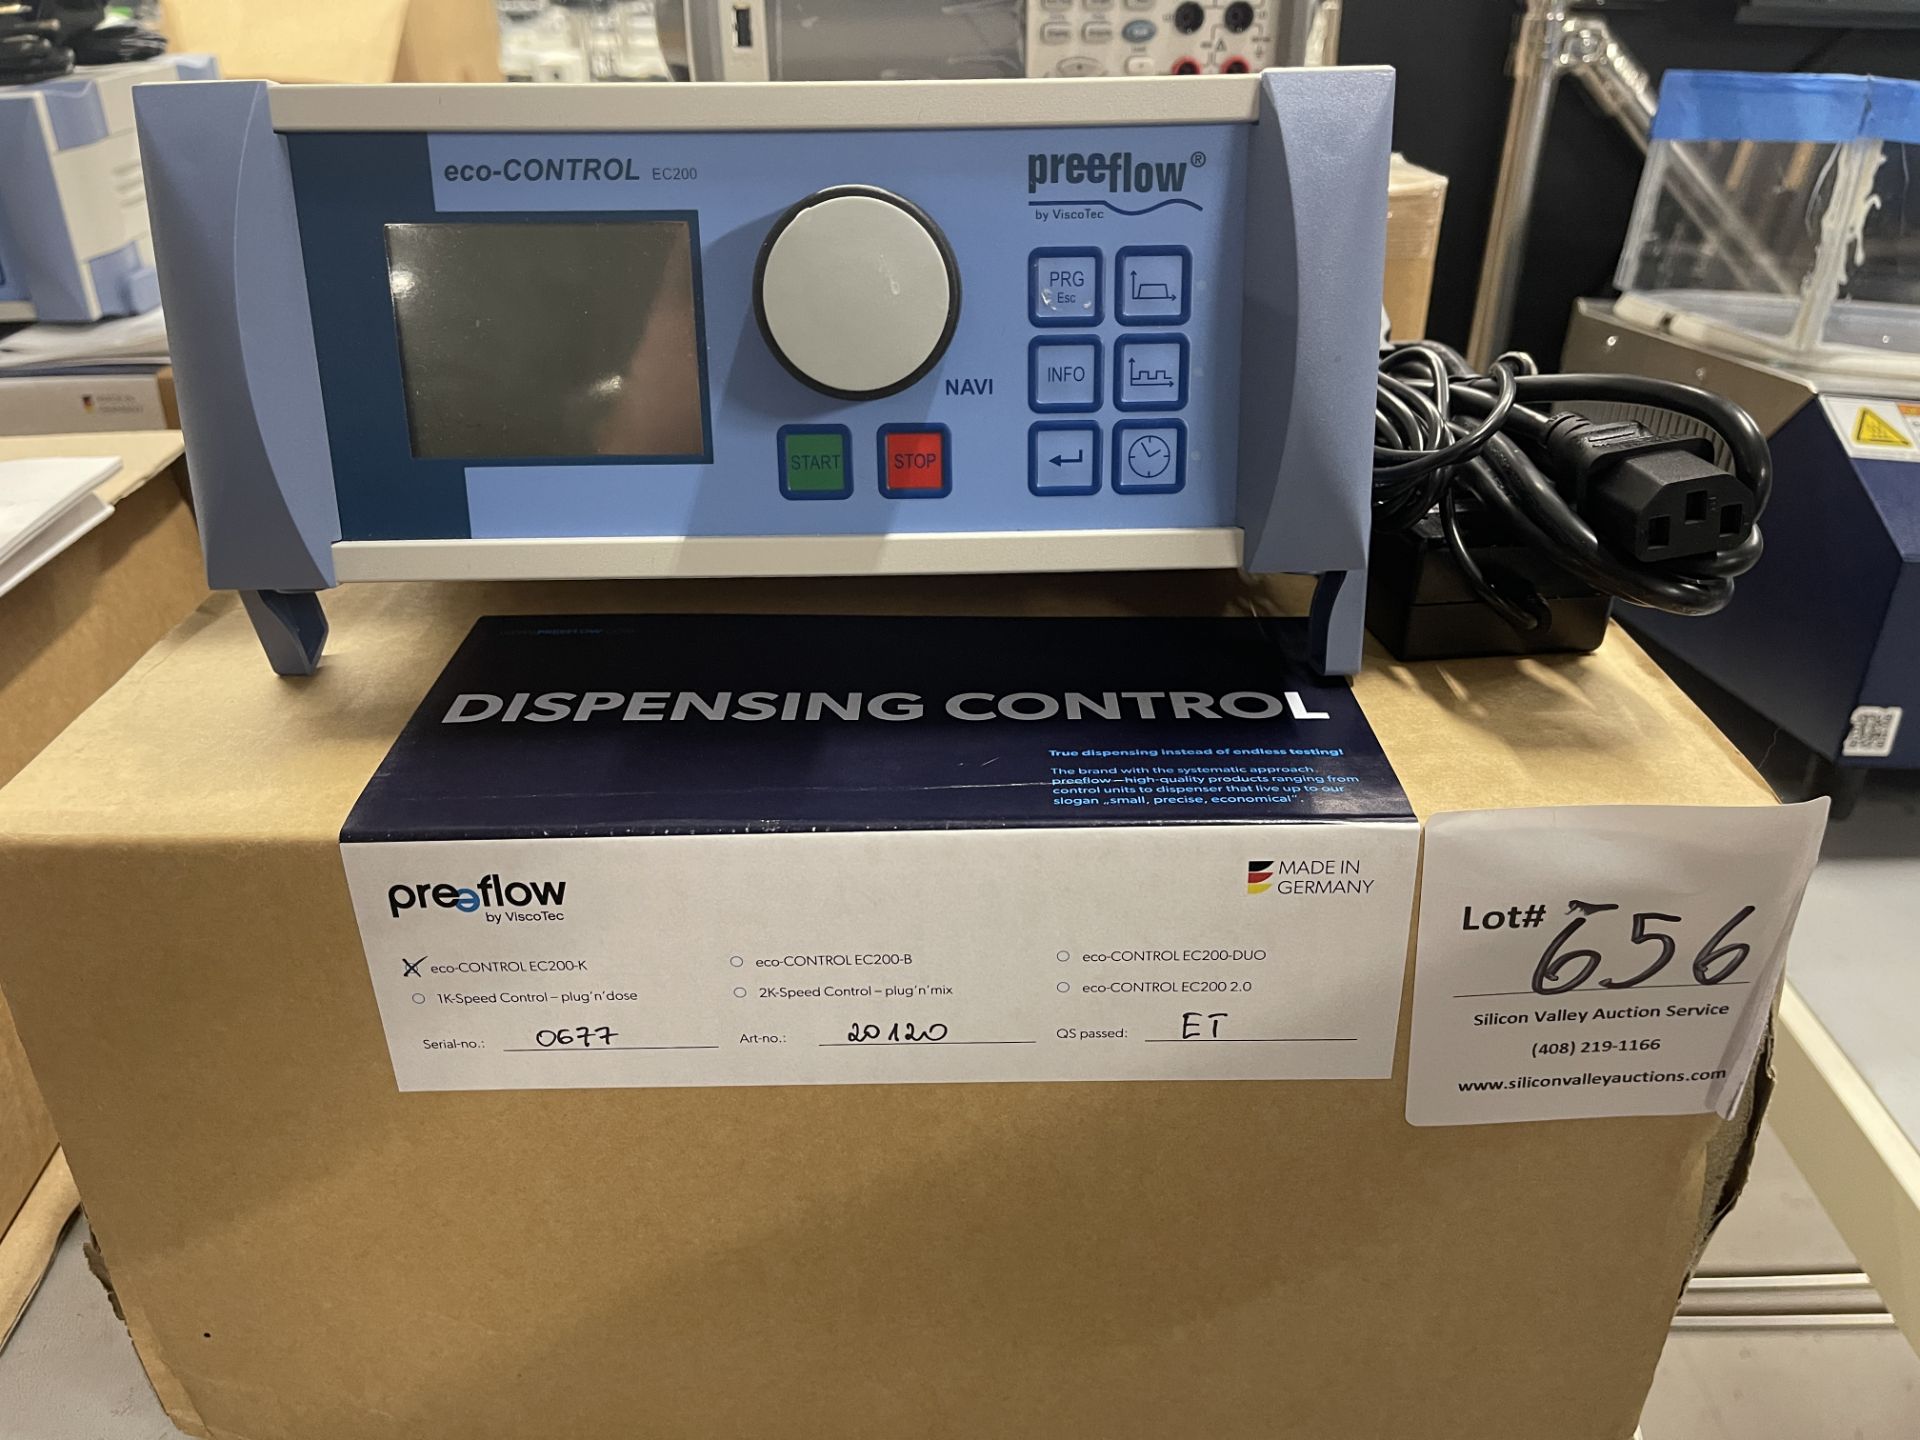 pree flow eco-Control EC200 Dispensing Control